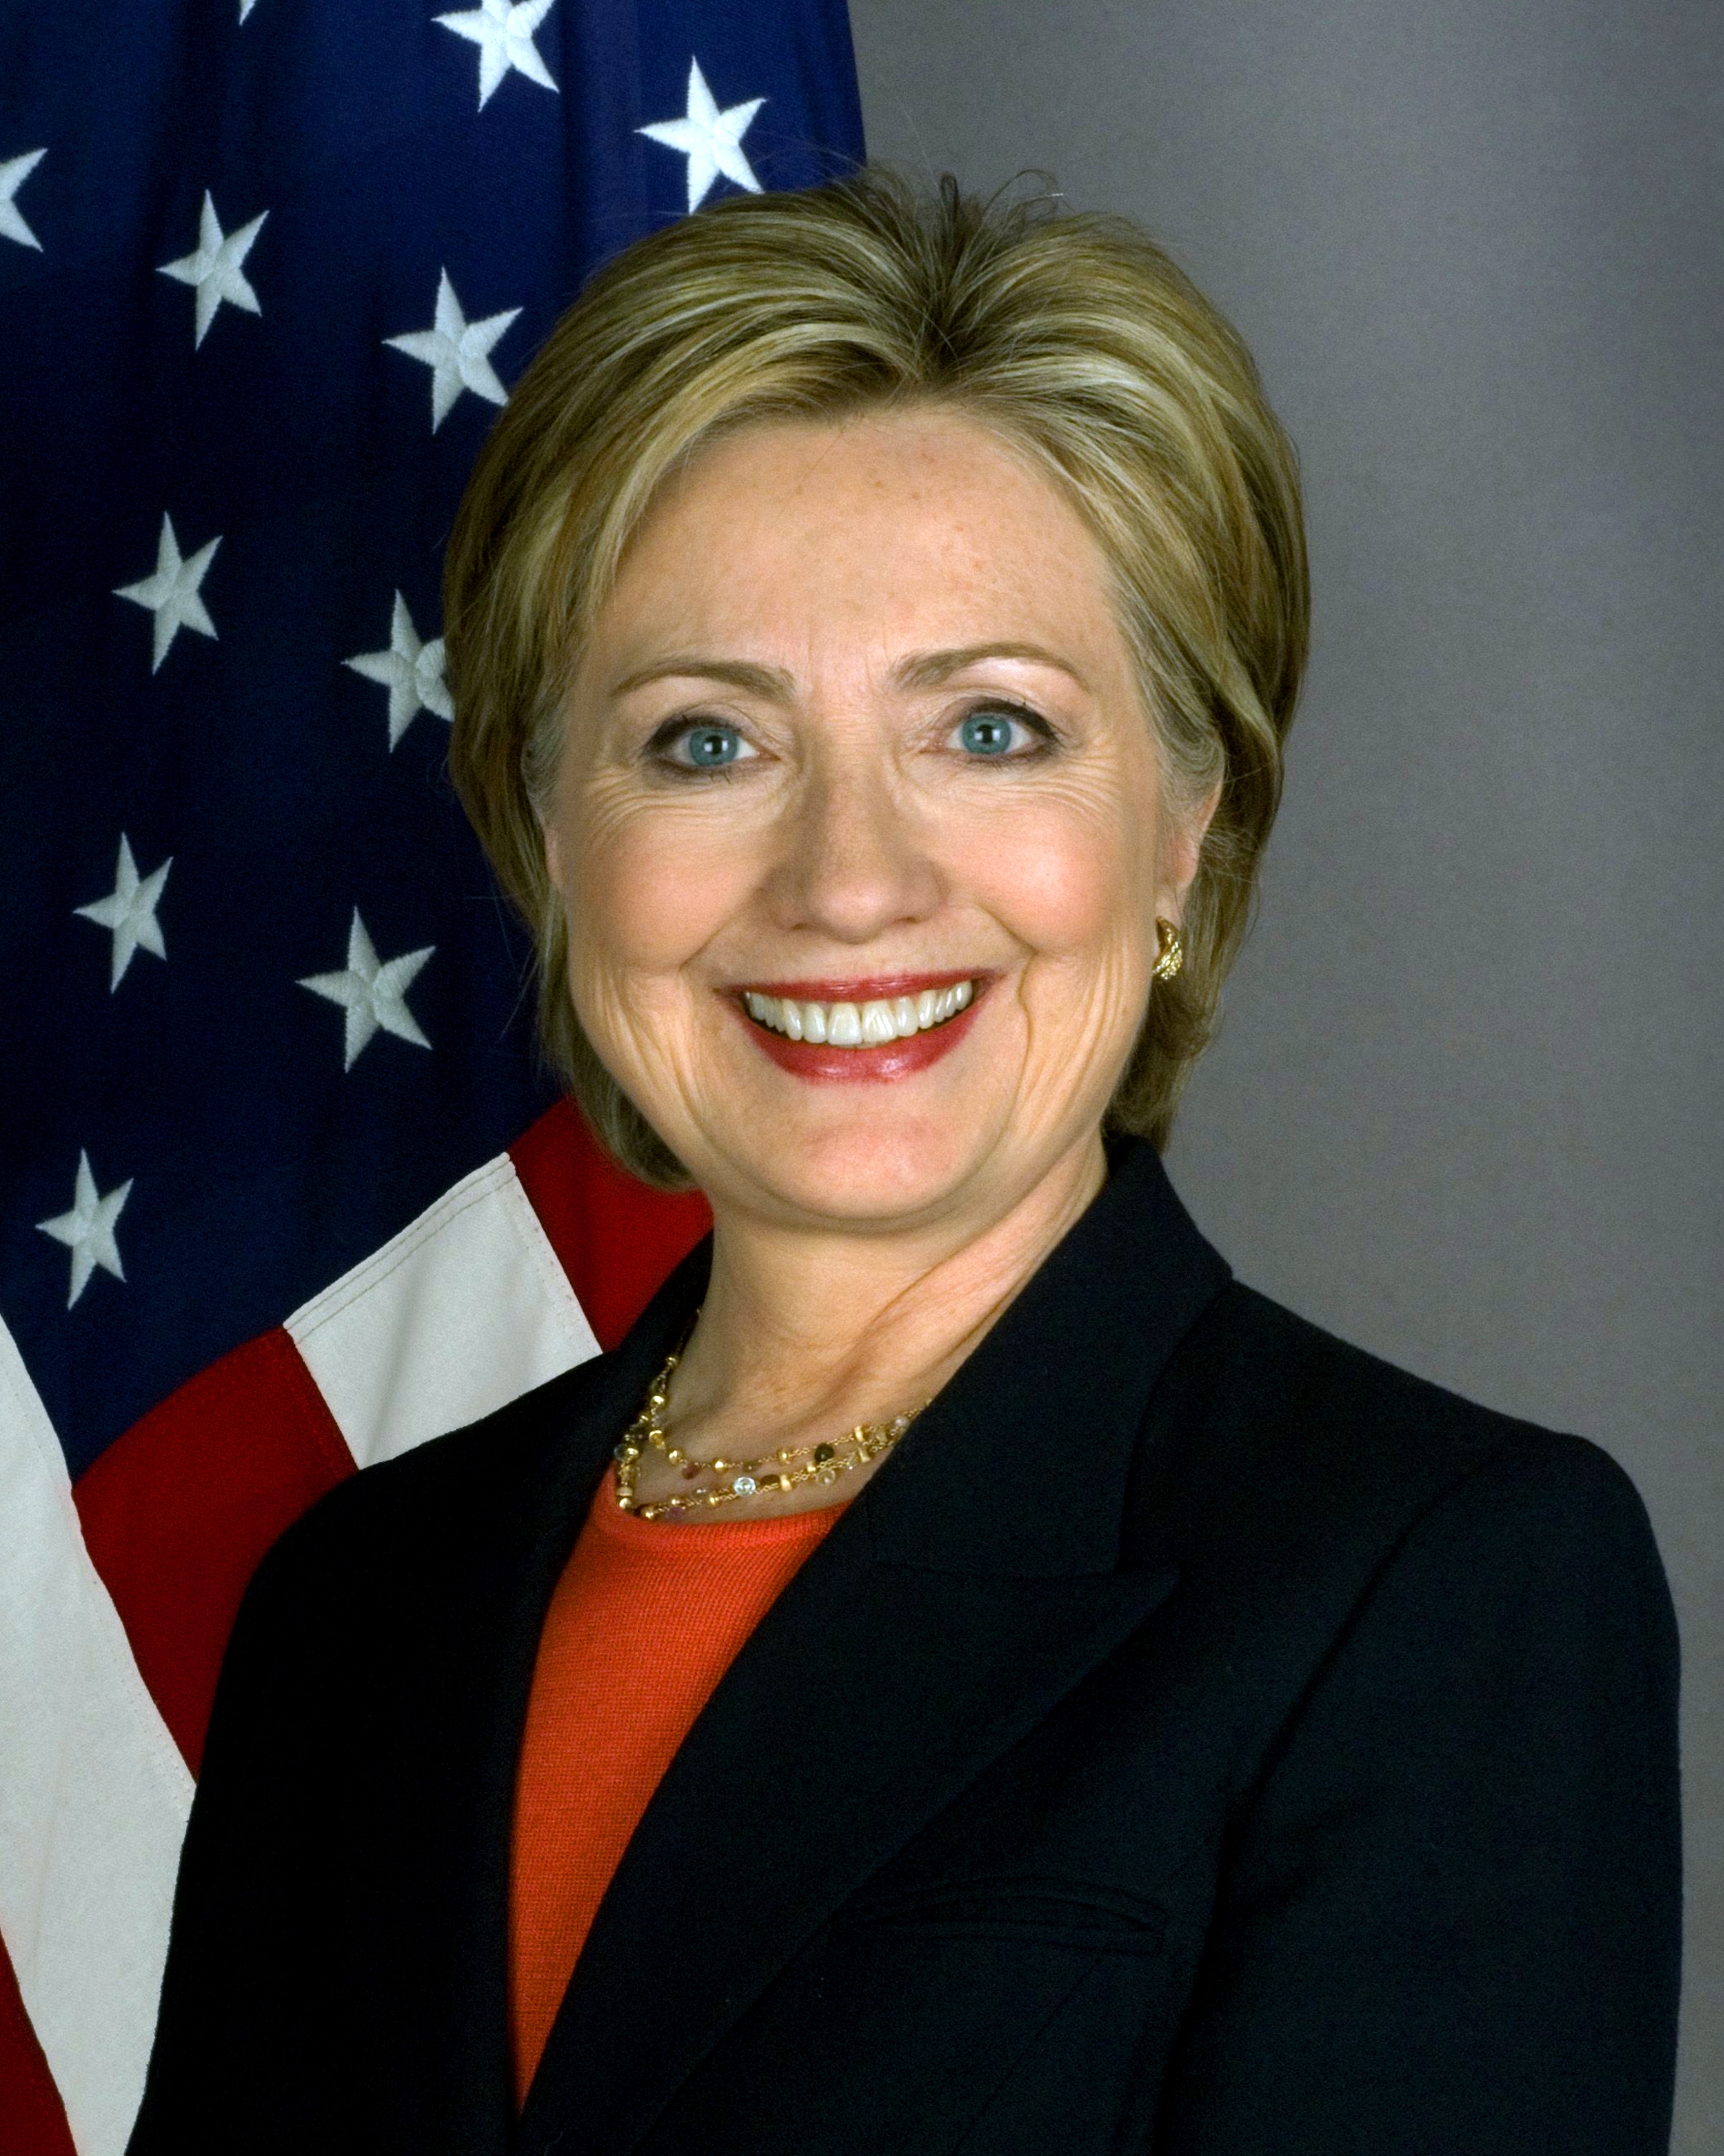 auteur Hillary Clinton de la citation Quand j'étais senior, j'ai couru pour le président de classe. Et j'ai perdu. Un de mes adversaires m'a même dit que j'étais "vraiment stupide" si je pensais qu'une fille pouvait être élue présidente.